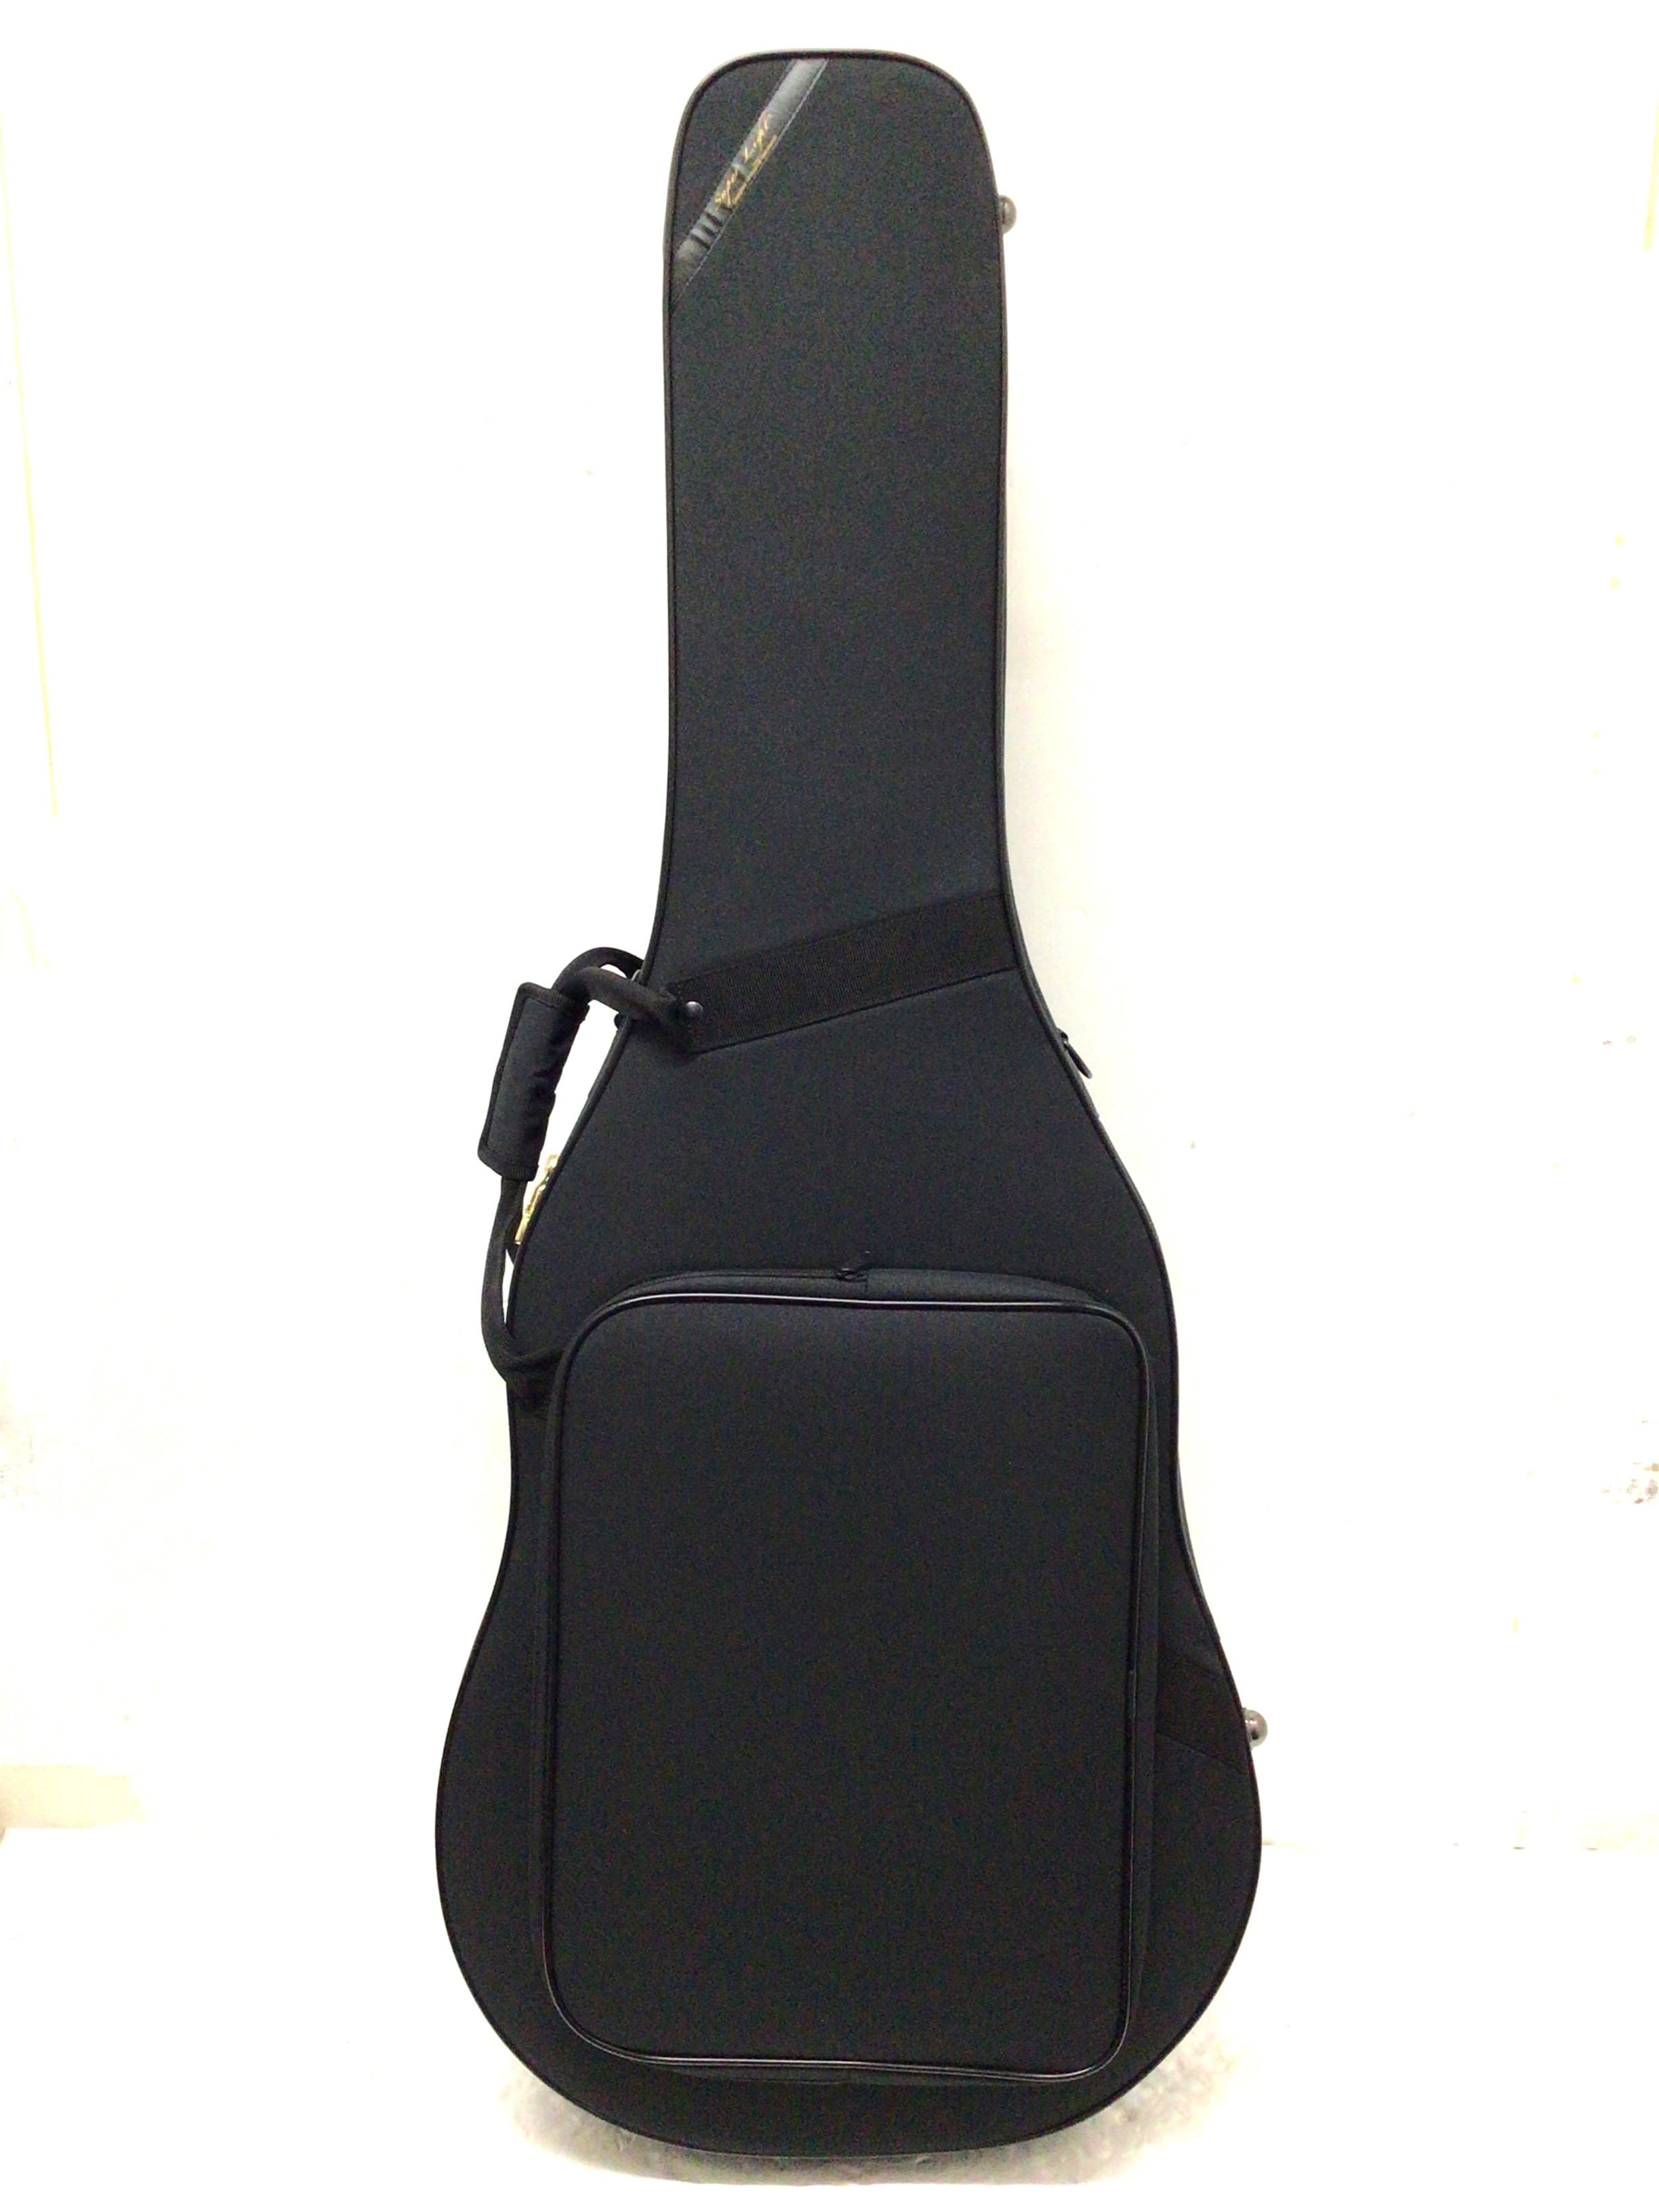 スーパーライトケース クラシックギター用 ブラック